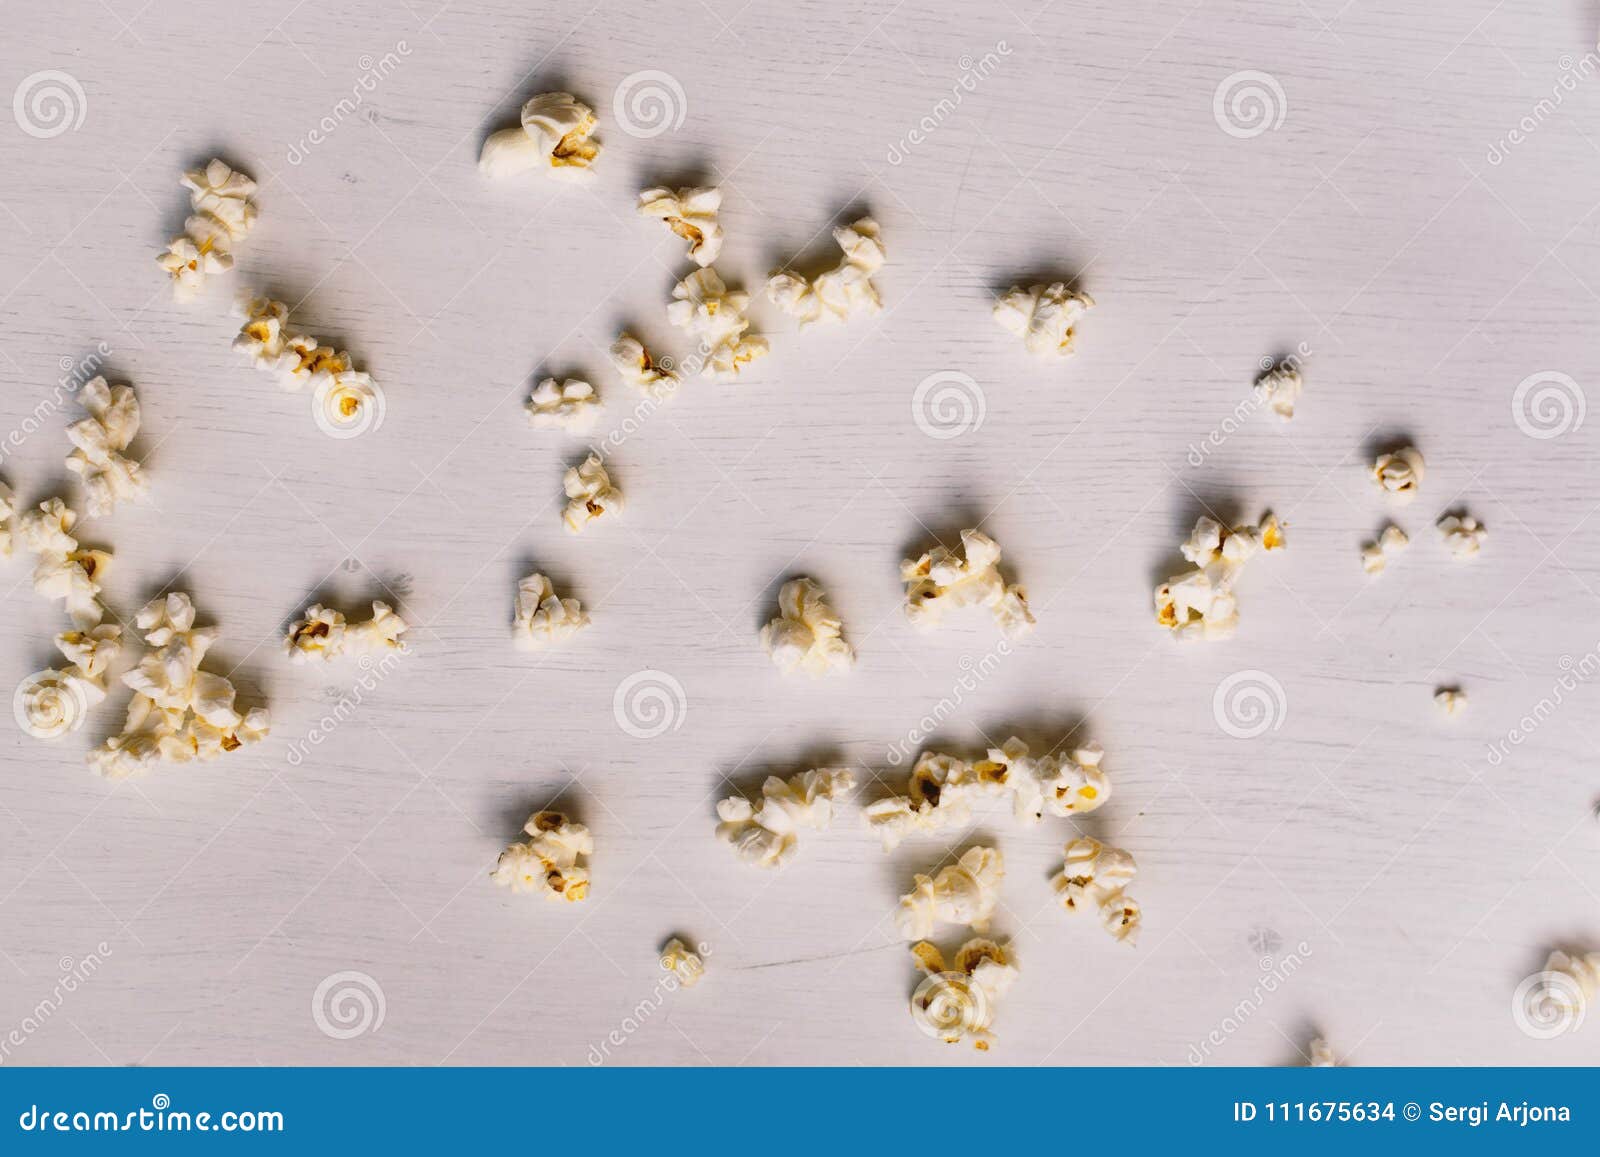 popcorn samples.